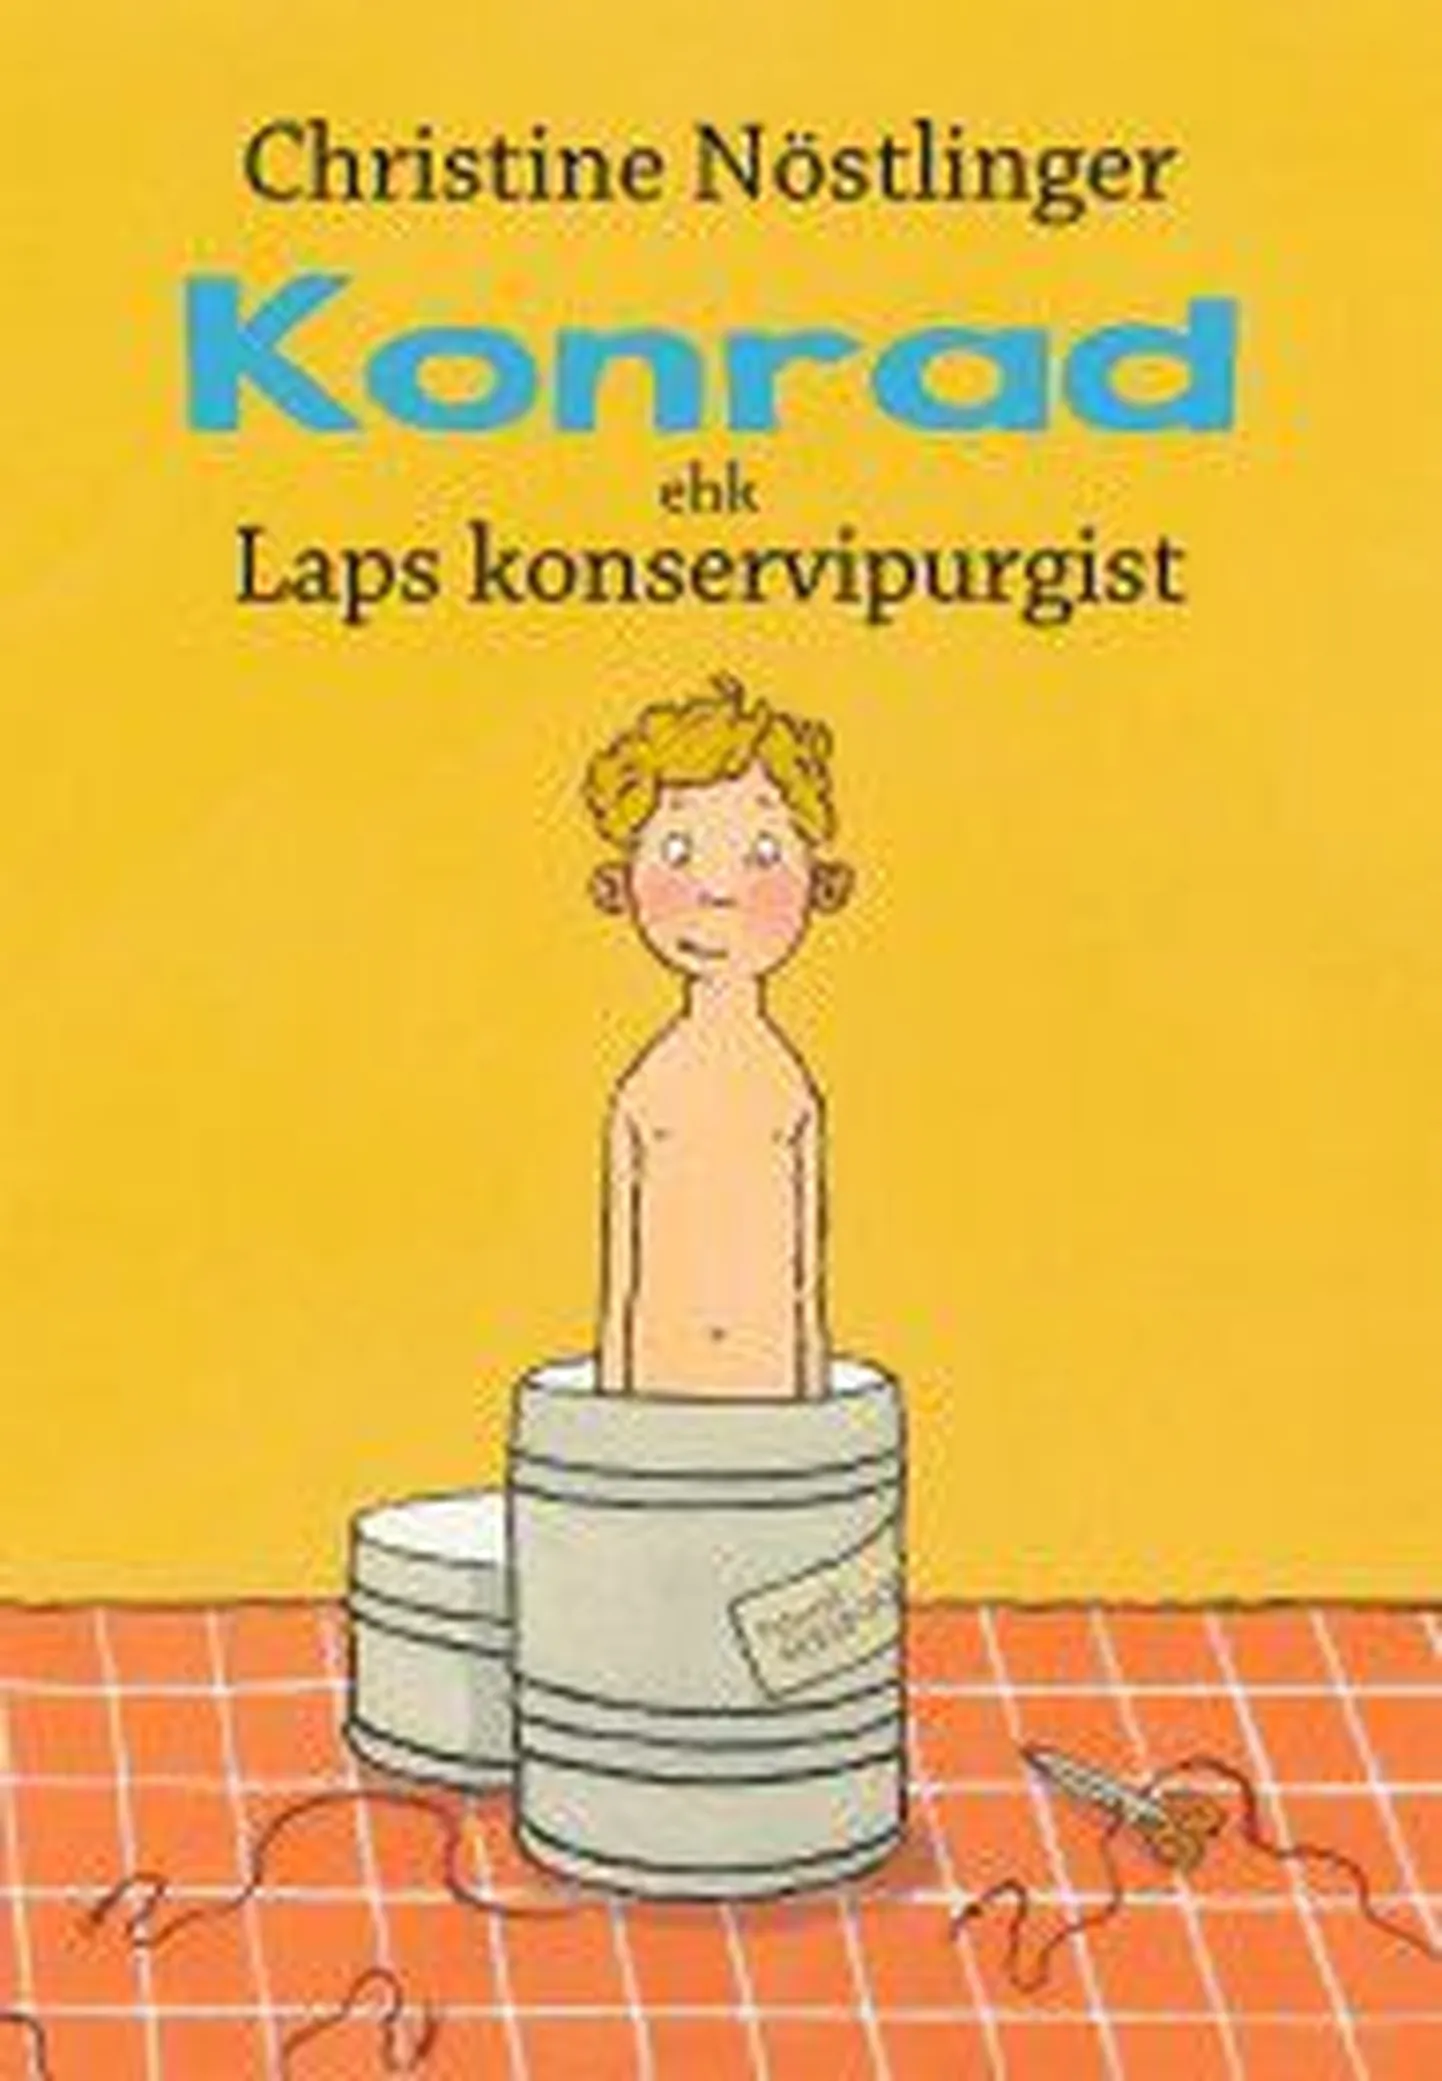 Raamatut «Konrad ehk Laps konservipurgist» loetakse menuka laste- ja noortekirjaniku Christine Nöstlingeri meistriteoseks. Eesti keelde tõlkis raamatu Piret Pääsuke.